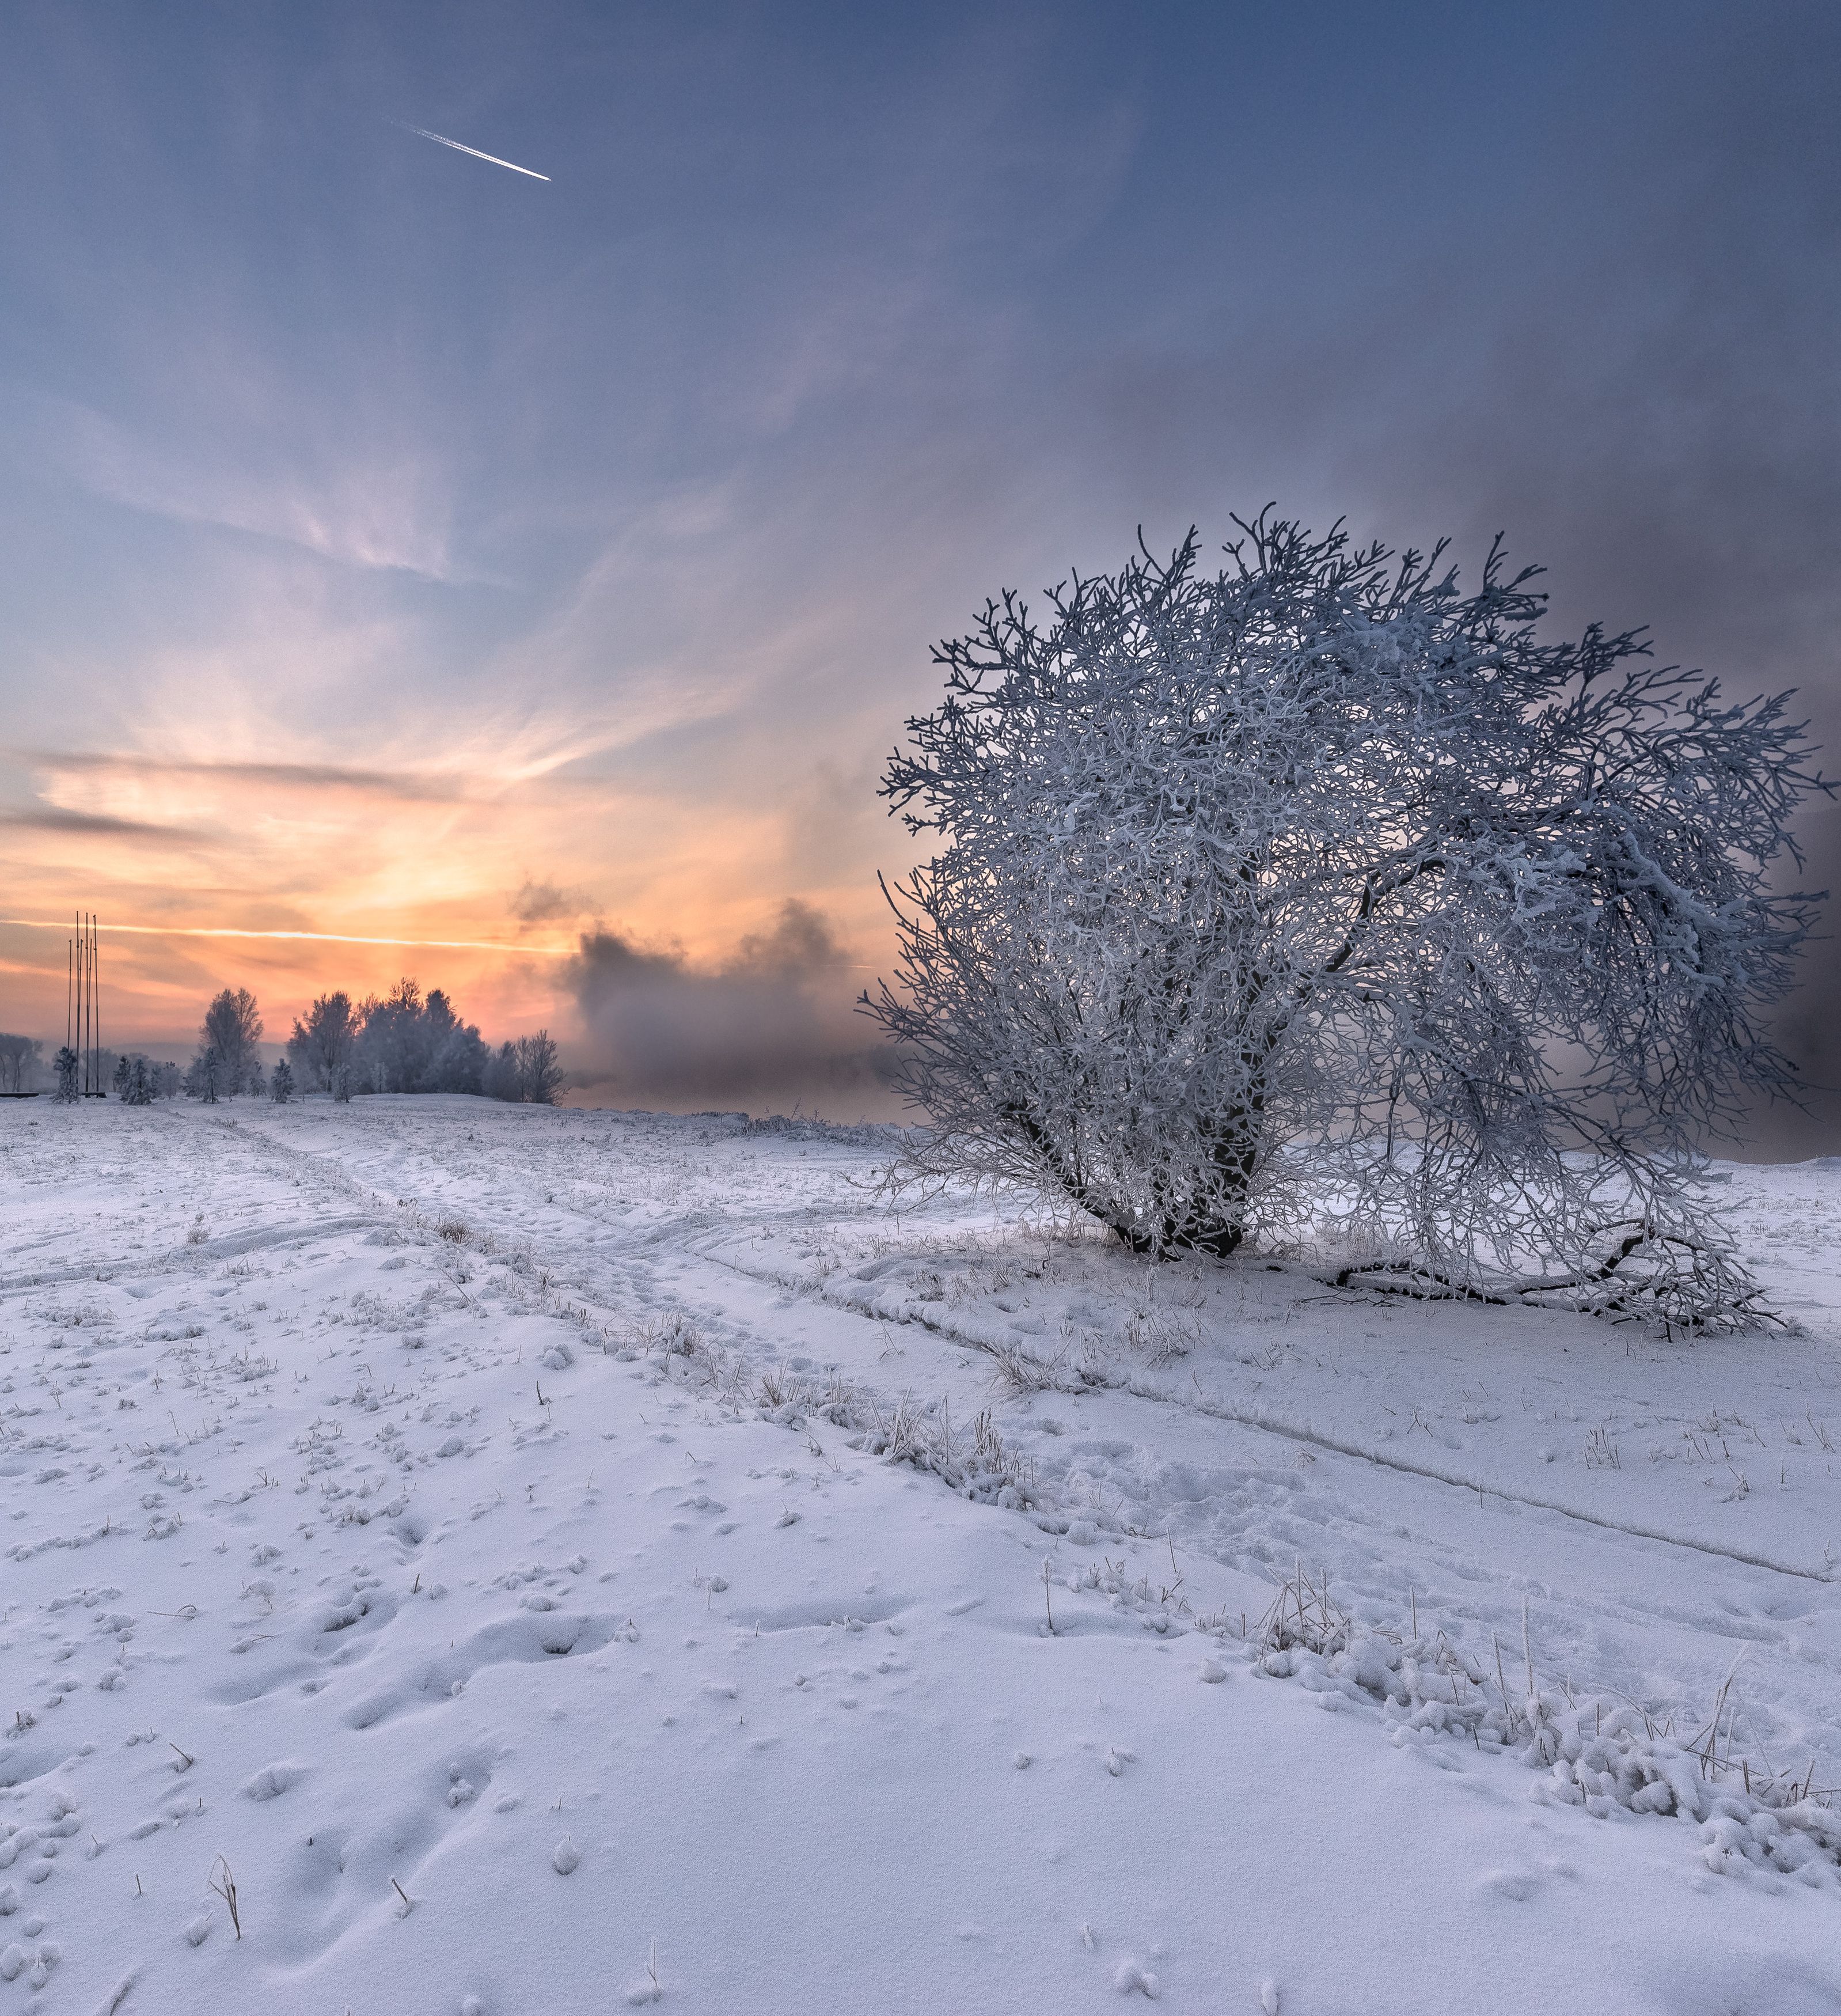 Снег, куст покрытый инеем, закат солнца, небо с летящим самолётом., Валерий Туманов